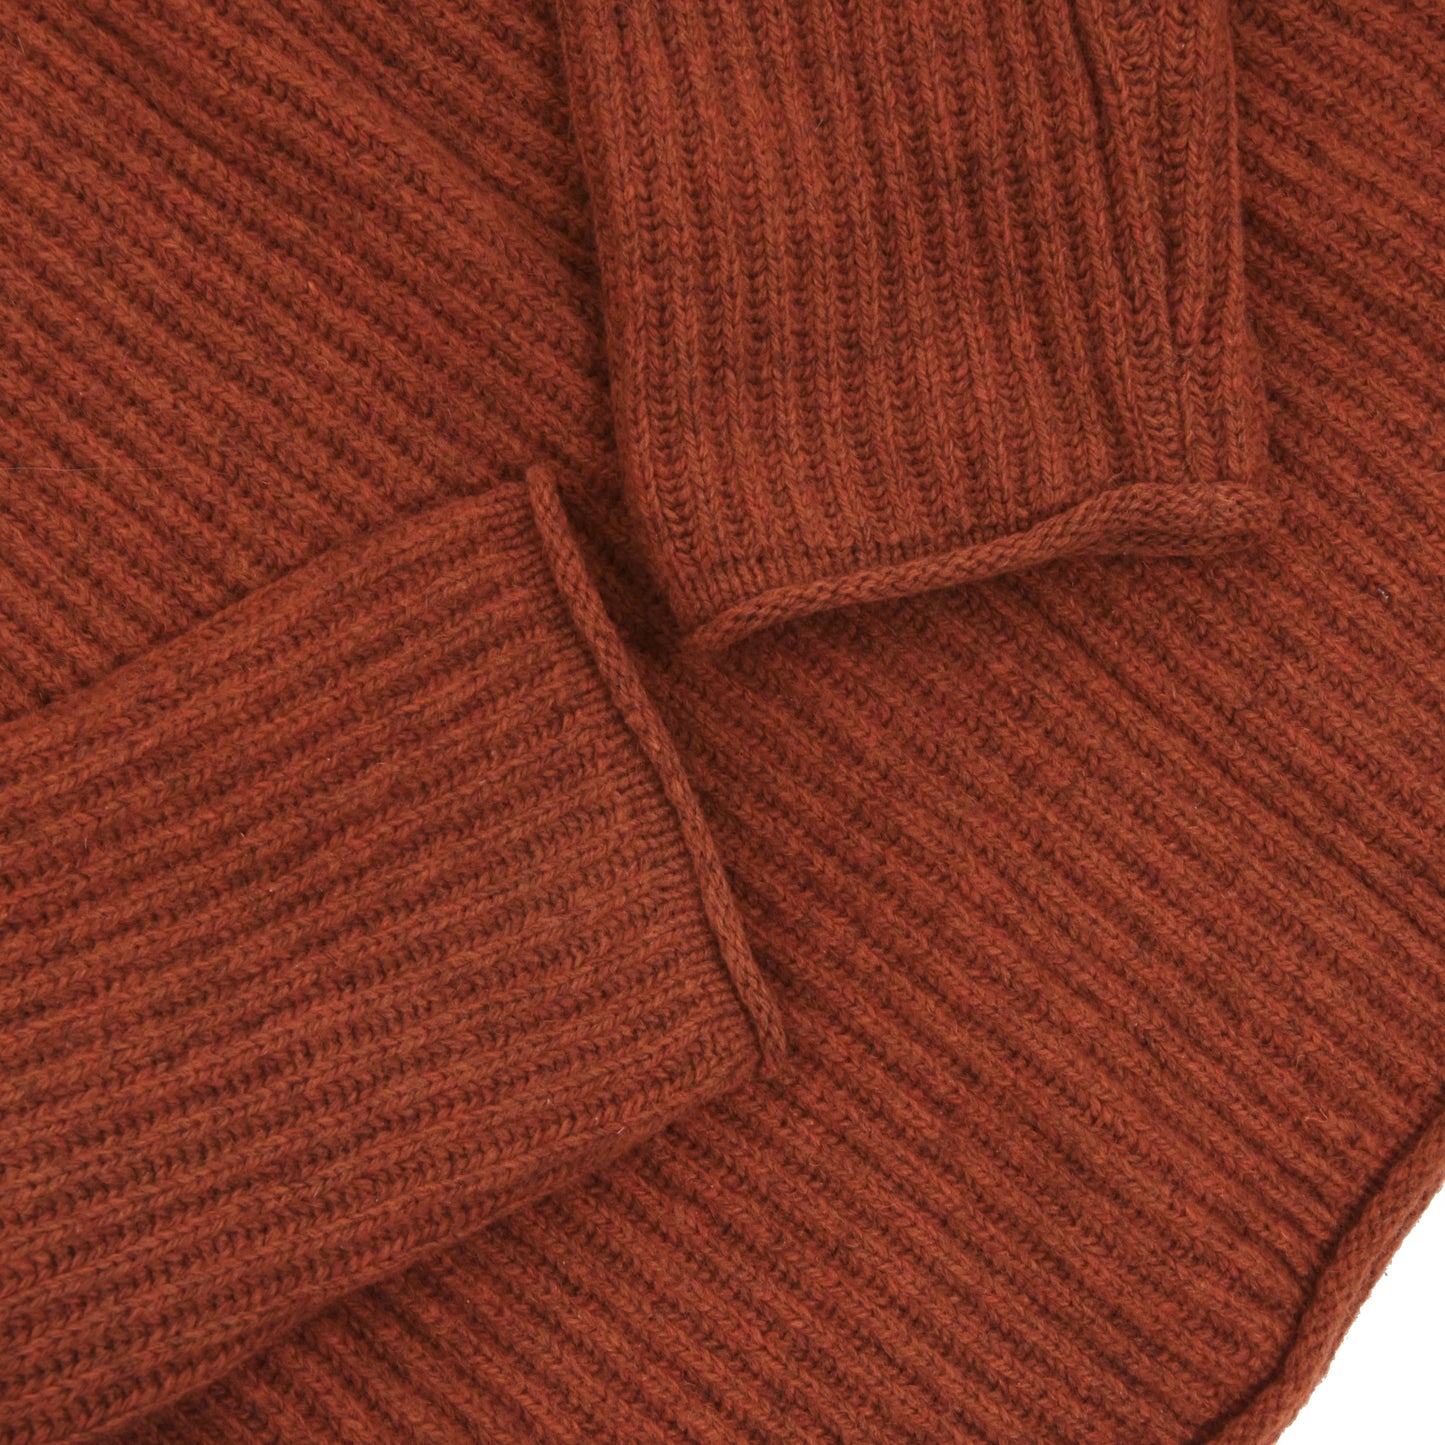 HOMECORE Knit Sweater Size M - Rust Orange